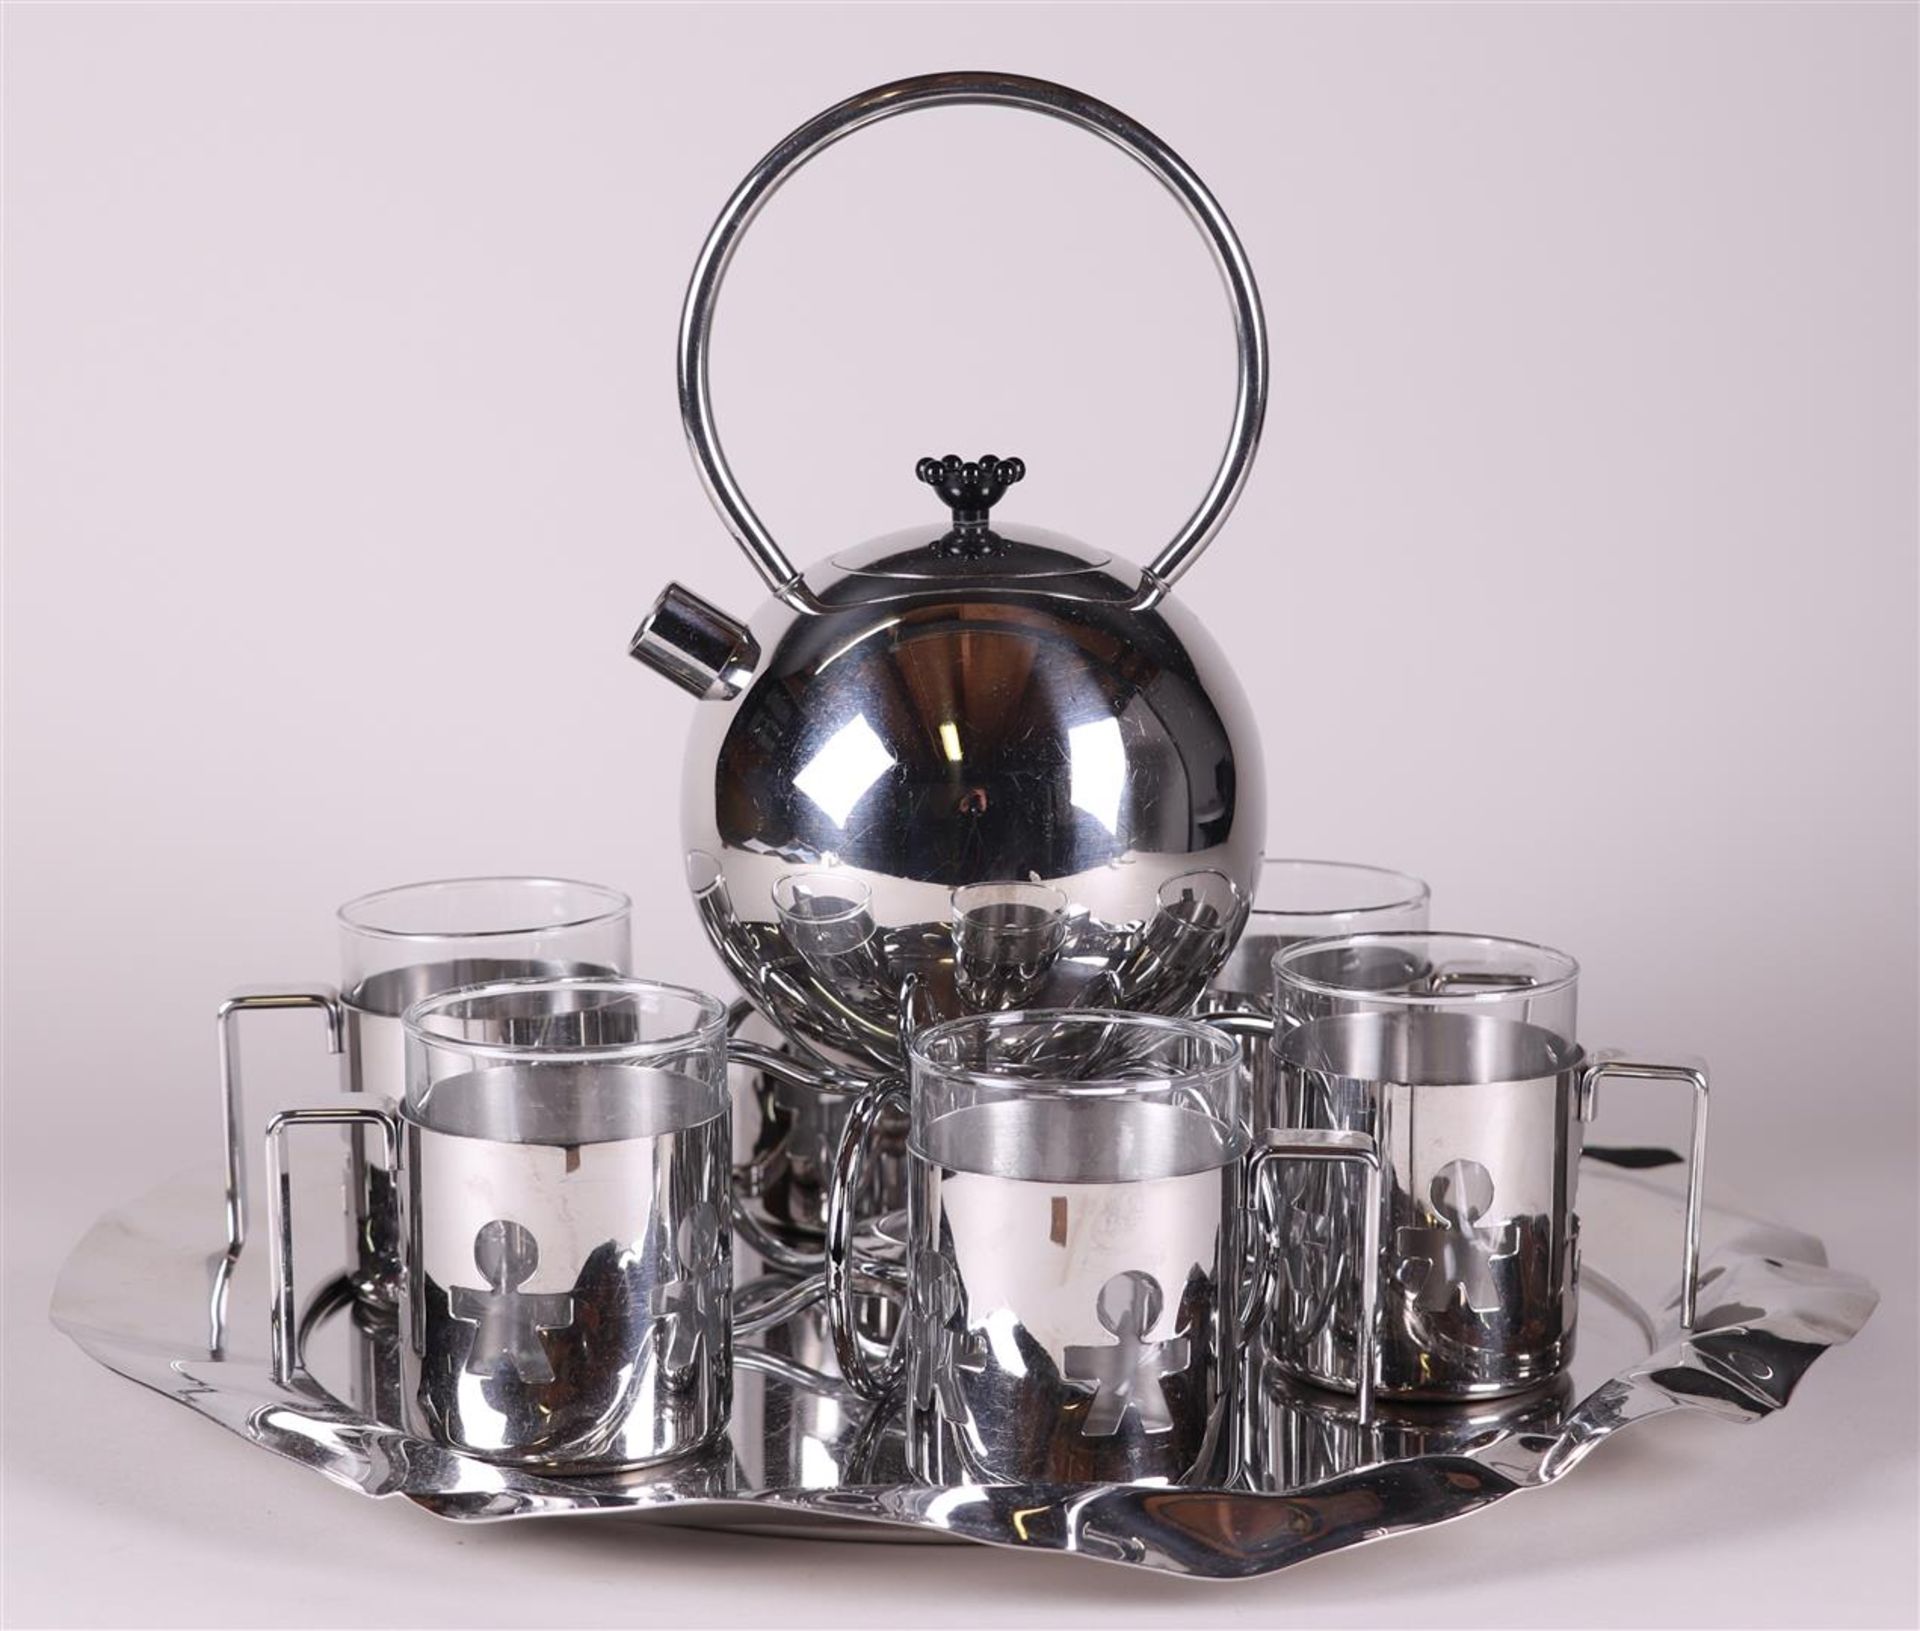 A design tea set consisting of a WMF teapot with tea light holder and Alessi tea mugs.